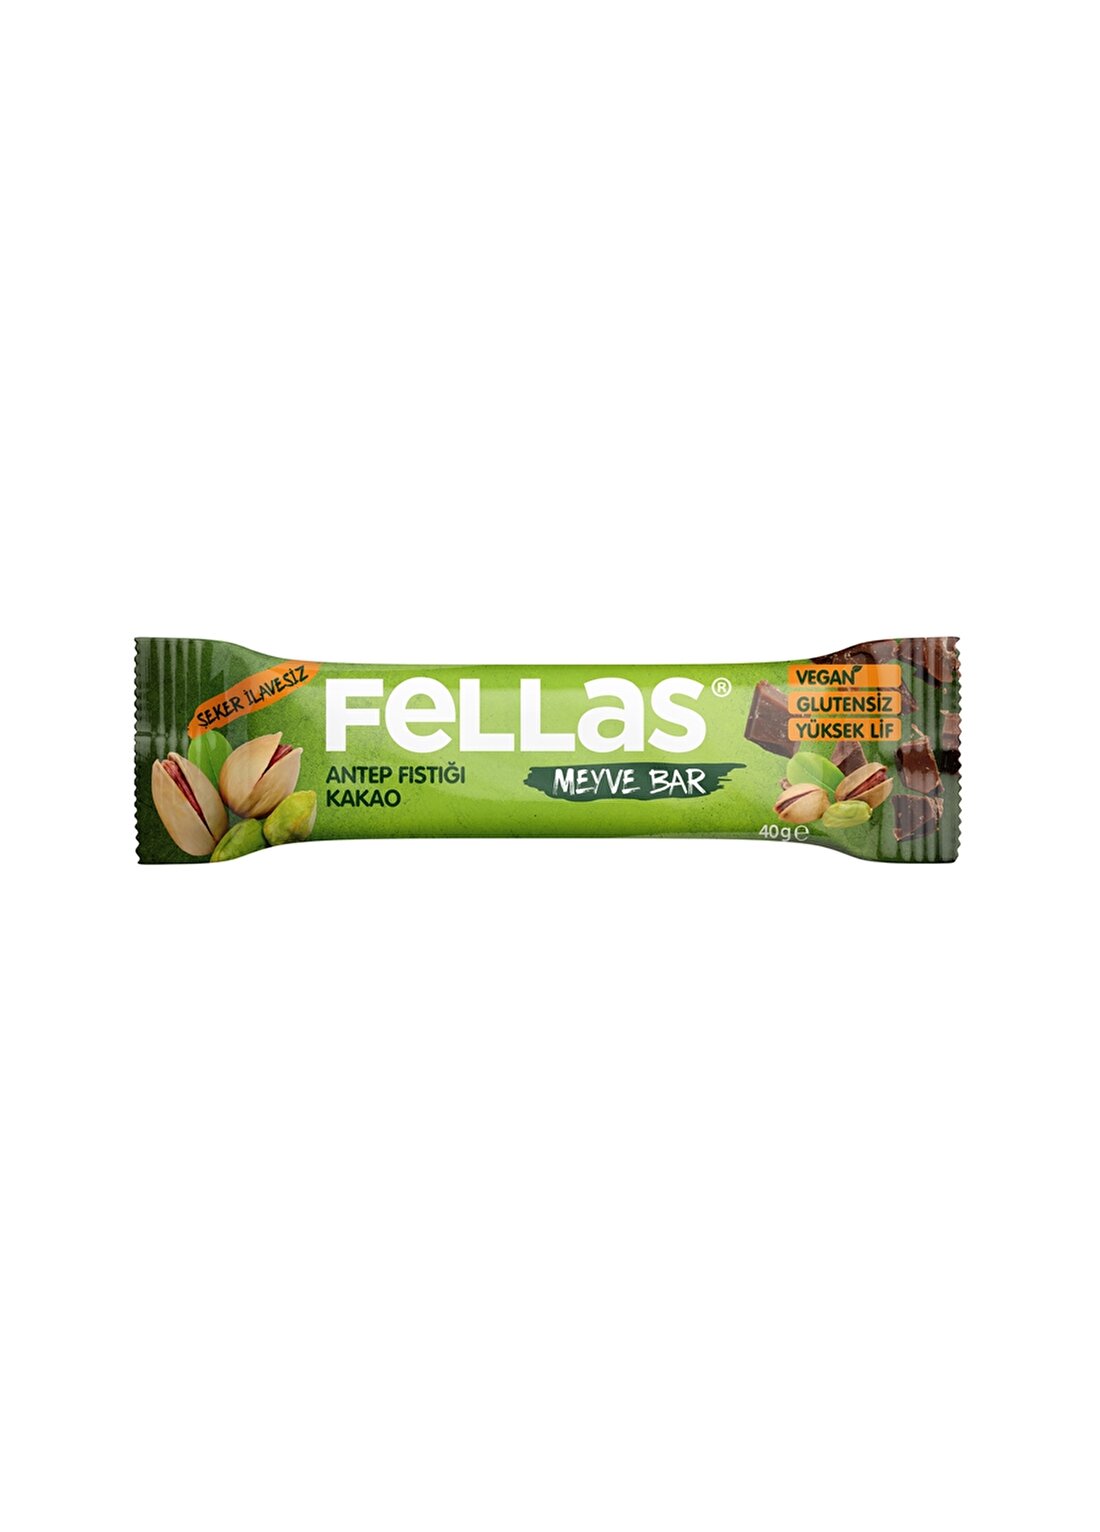 Fellas Meyve Bar - Antep Fıstığı Ve Kakao (40 G)